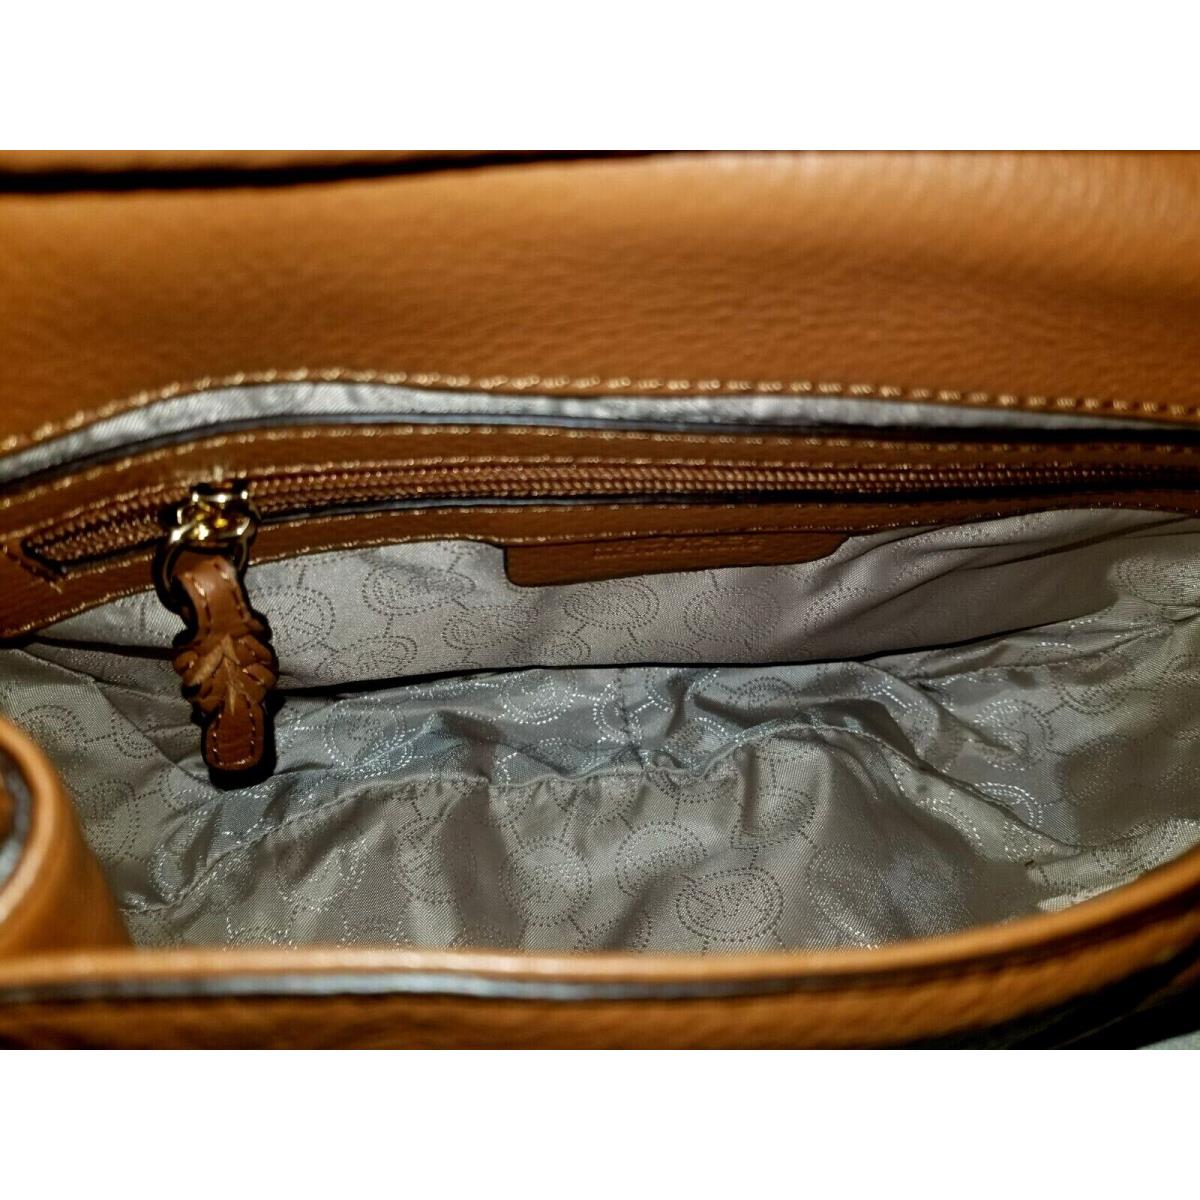 Michael Kors  bag  BENNET - Orange Handle/Strap, Gold Hardware, Beige Lining 10